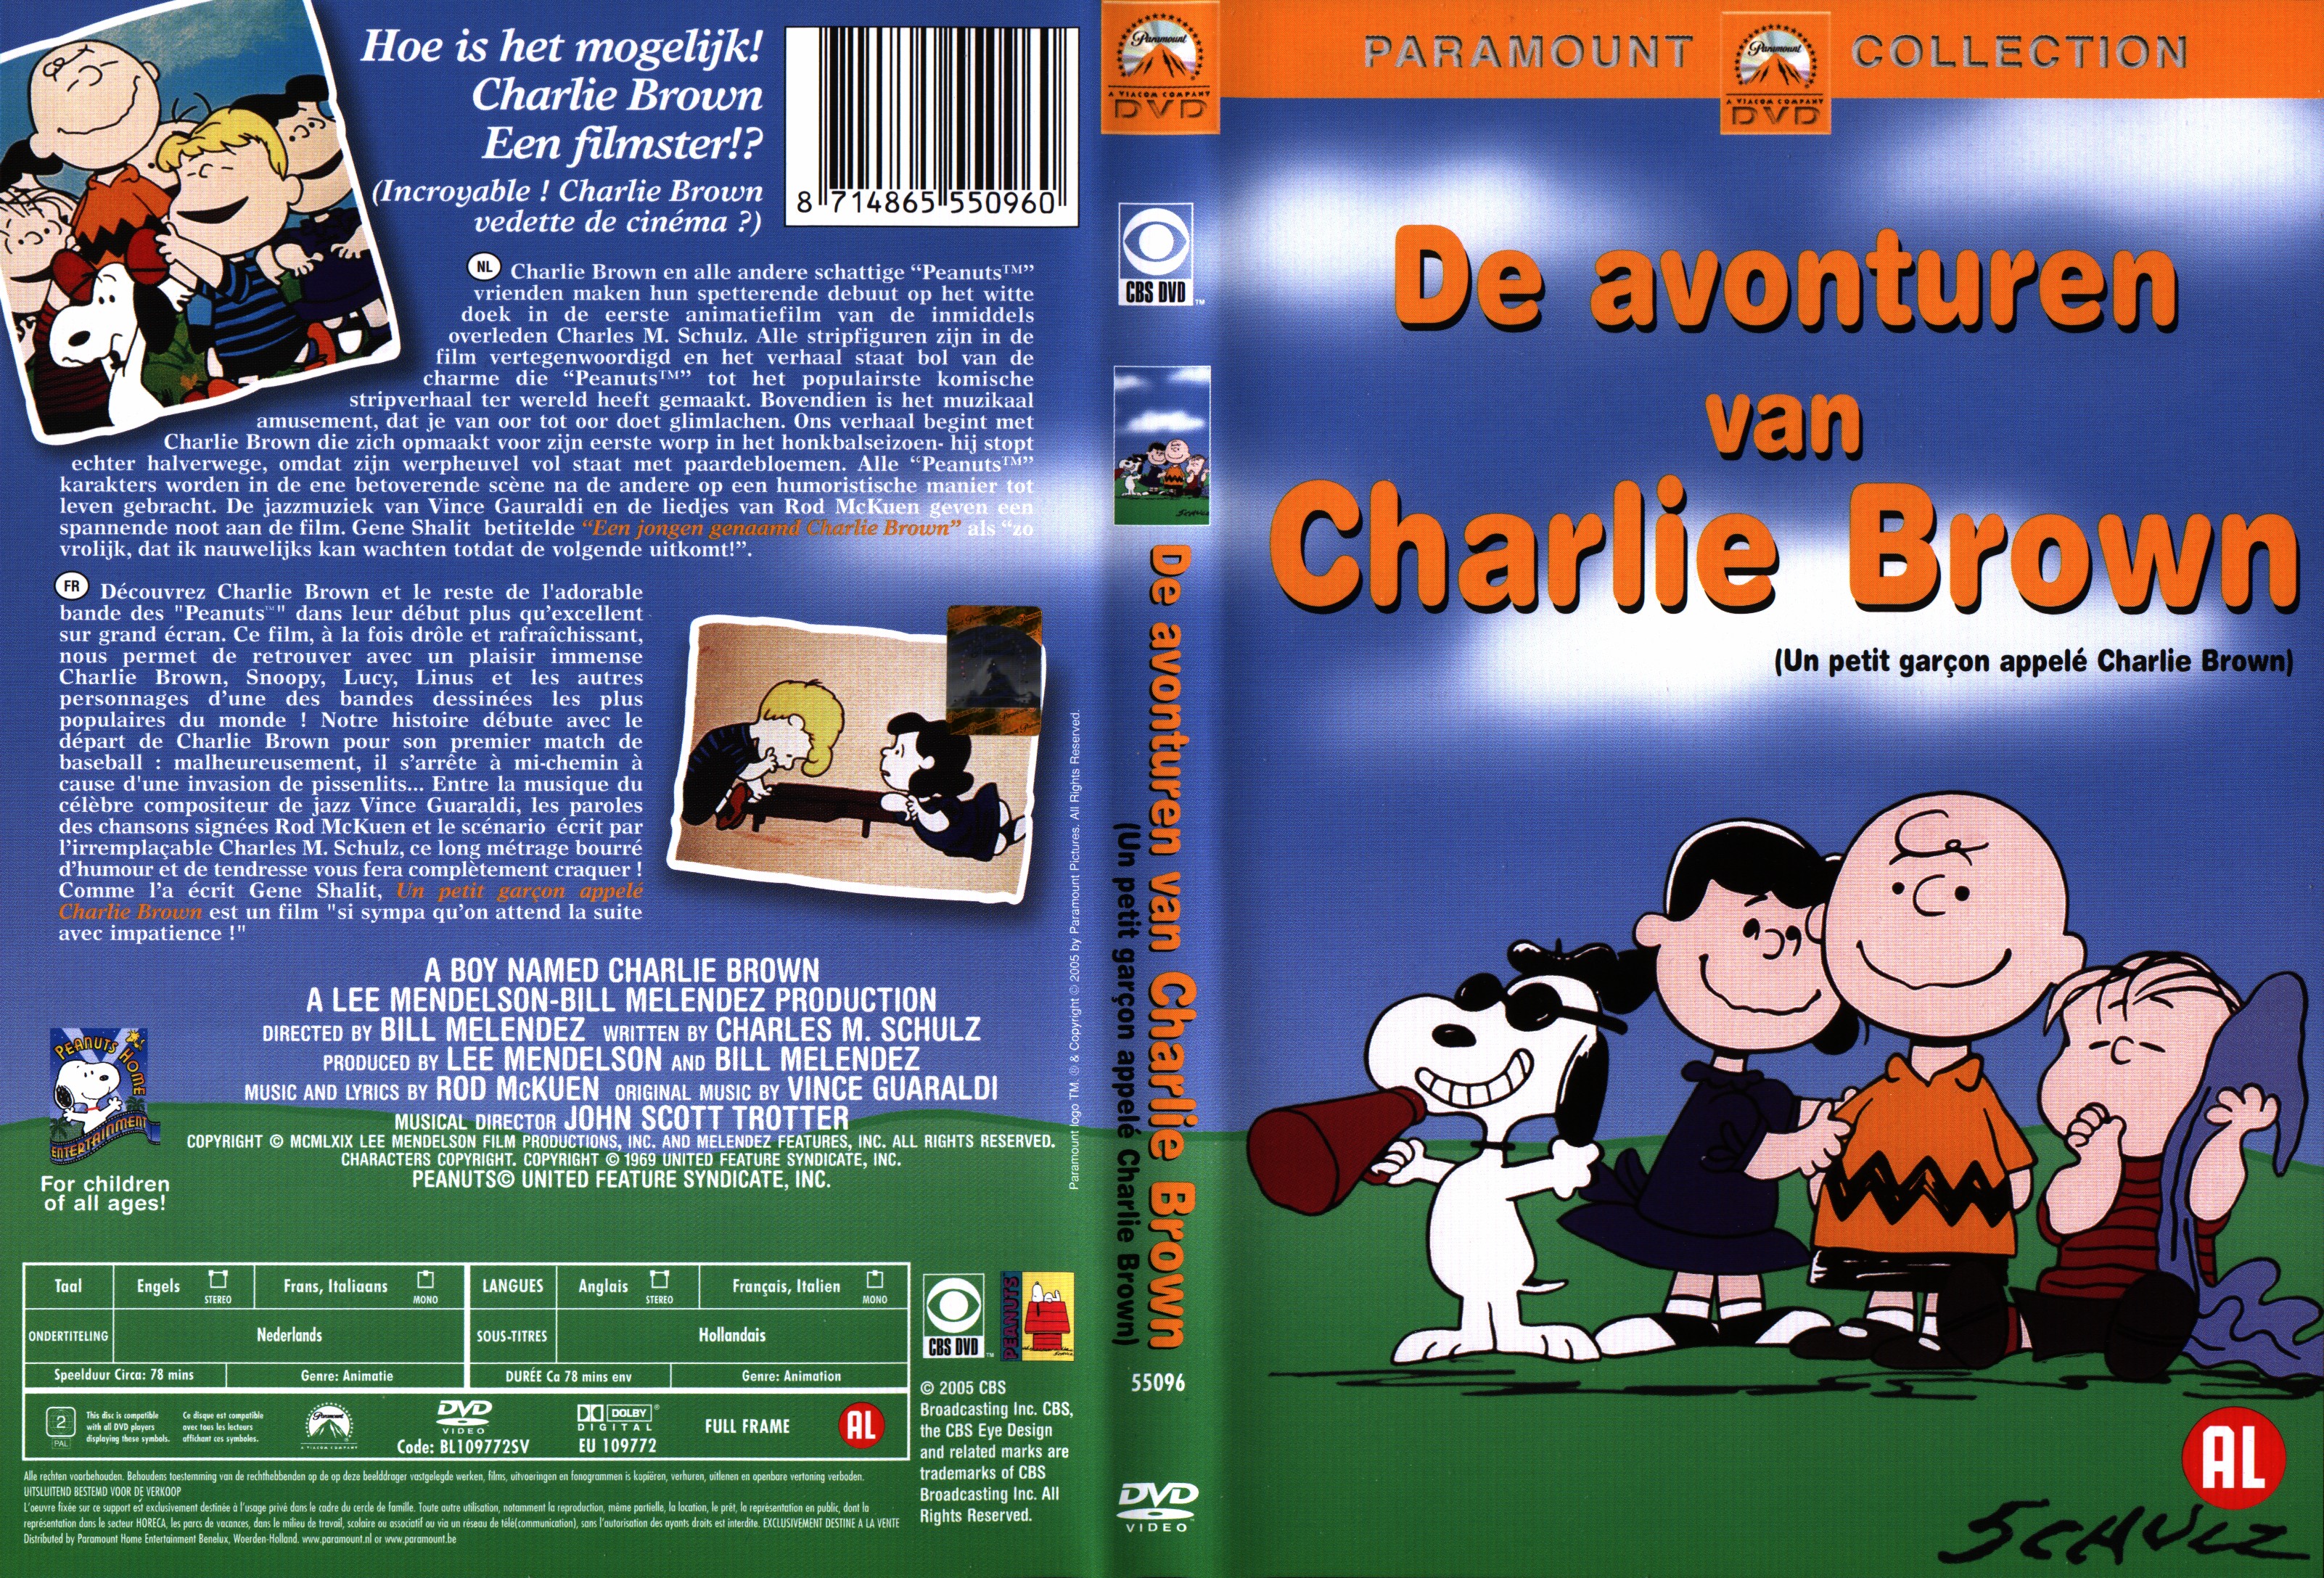 Jaquette DVD Un petit garcon appel Charlie Brown